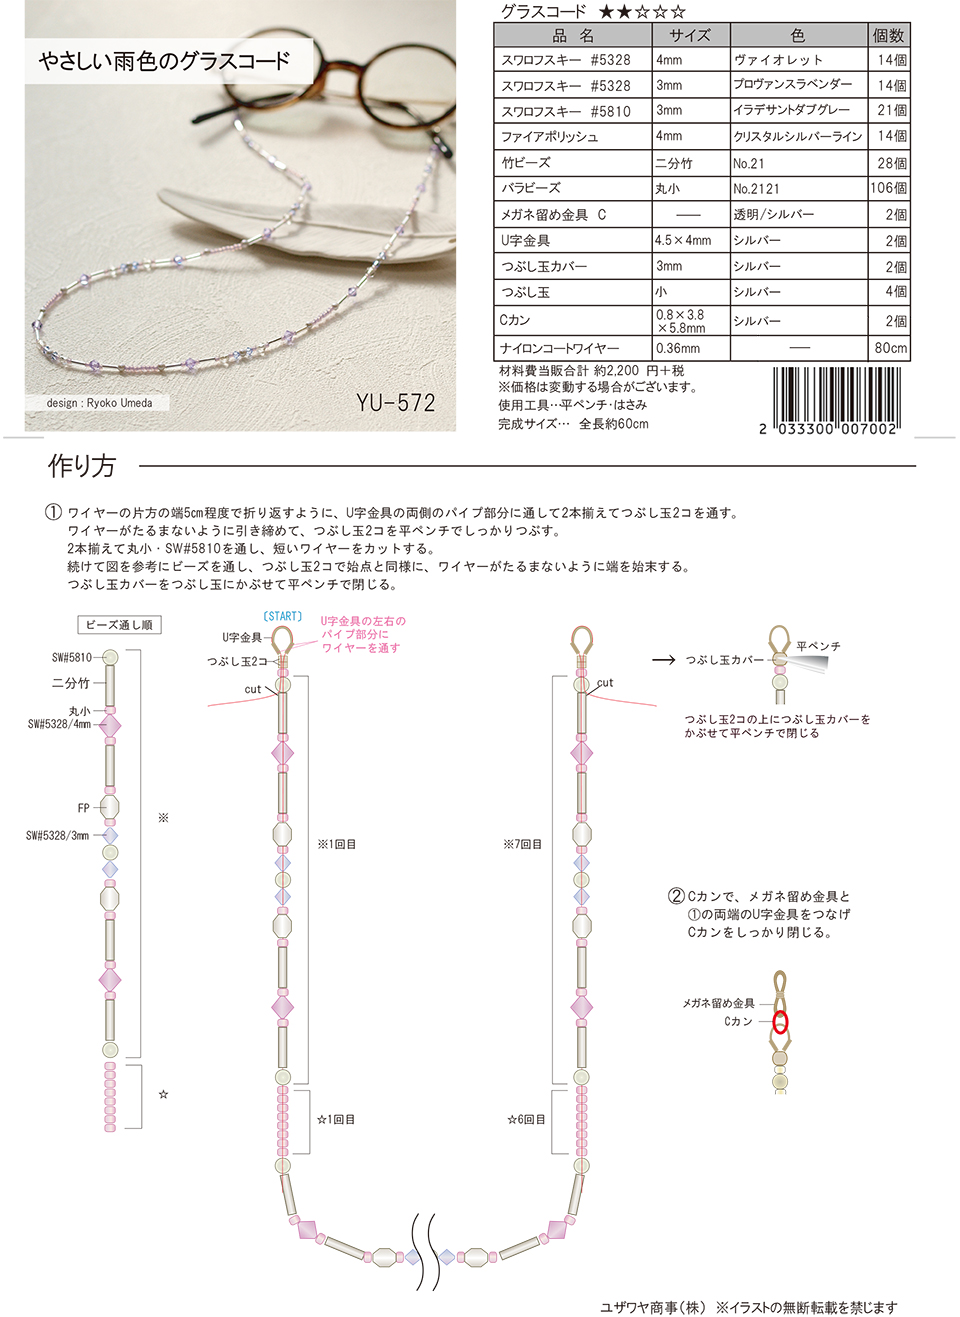 やさしい雨色のグラスコード Yu 572 ユザワヤオリジナルレシピ ユザワヤ 手芸用品 生地 ホビー材料専門店